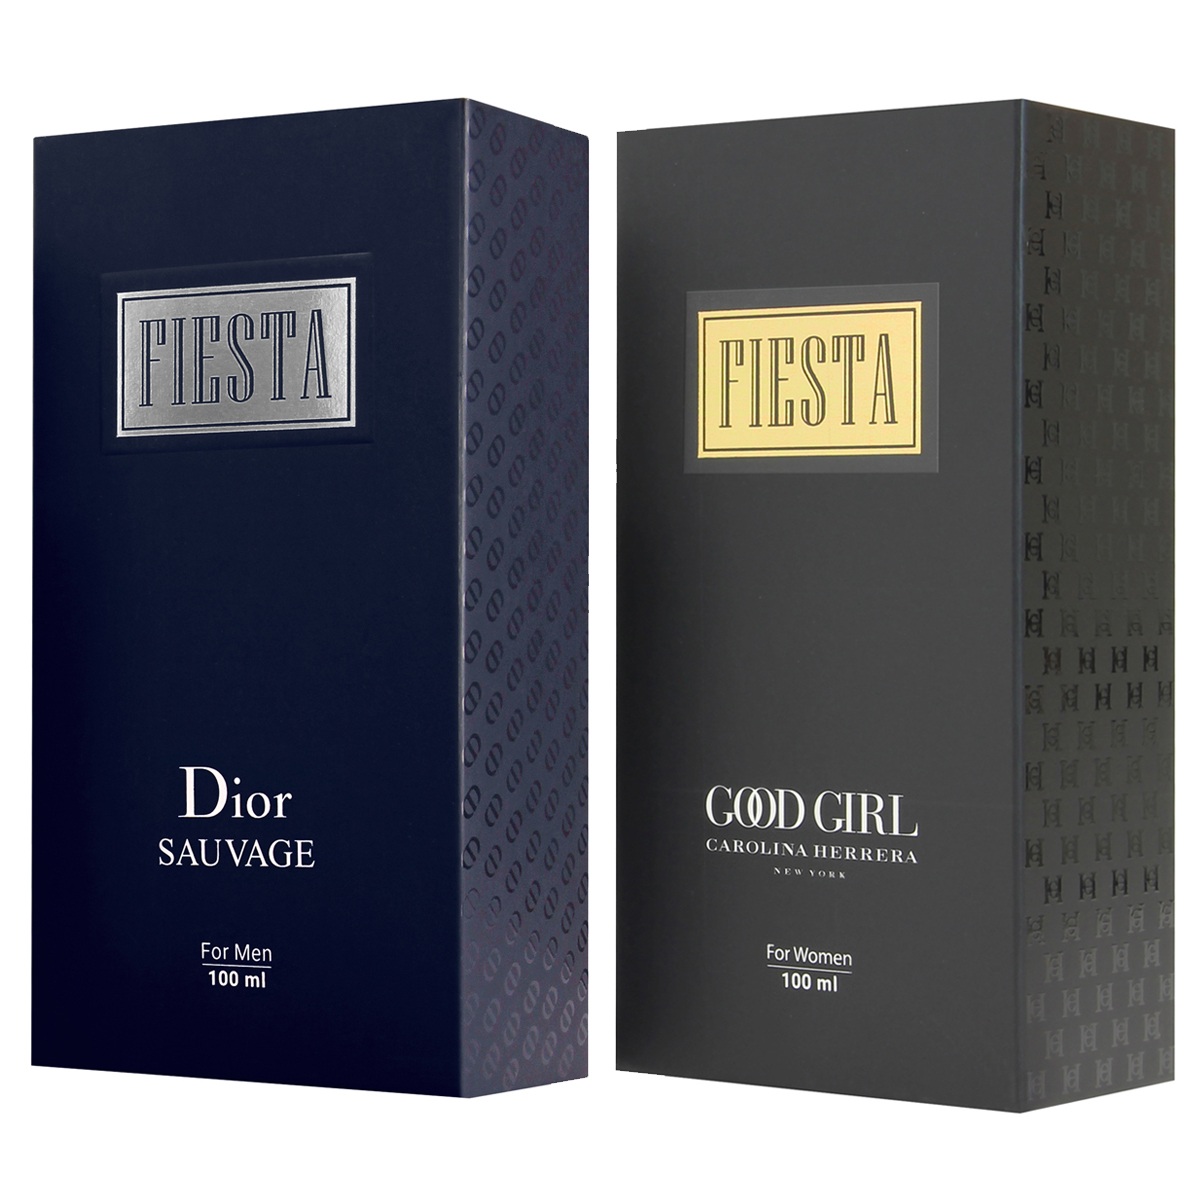 ادو پرفیوم زنانه فیستا مدل Good Girl حجم 100 میلی لیتر به همراه ادو پرفیوم مردانه فیستا مدل Dior Sauvage -  - 2